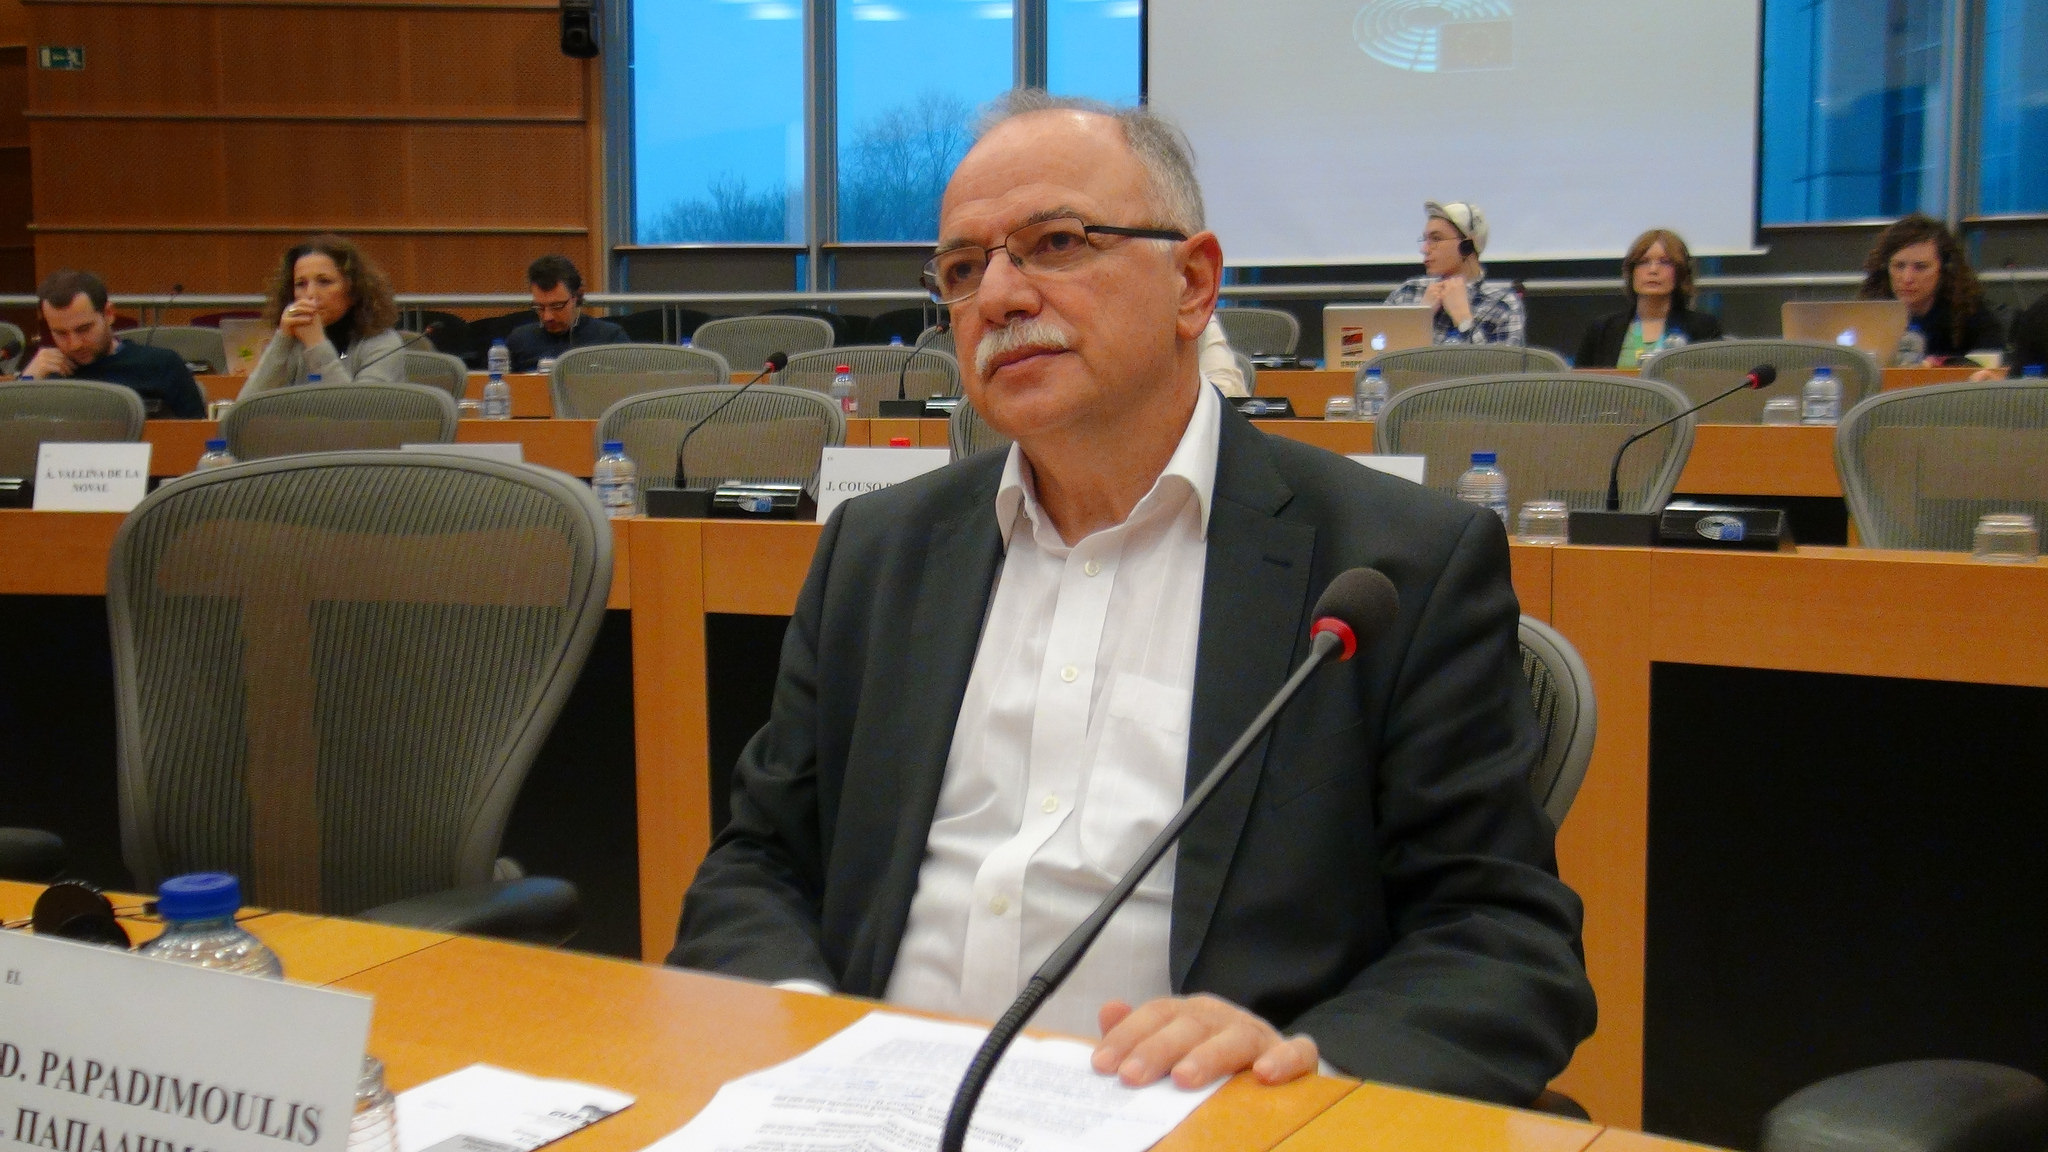 Επιστολή ενημέρωσης του Δημ. Παπαδημούλη σε Α. Ταγιάνι και πολιτικούς αρχηγούς στο ΕΚ σχετικά με τη νομική αναγνώριση φύλου στην Ελλάδα